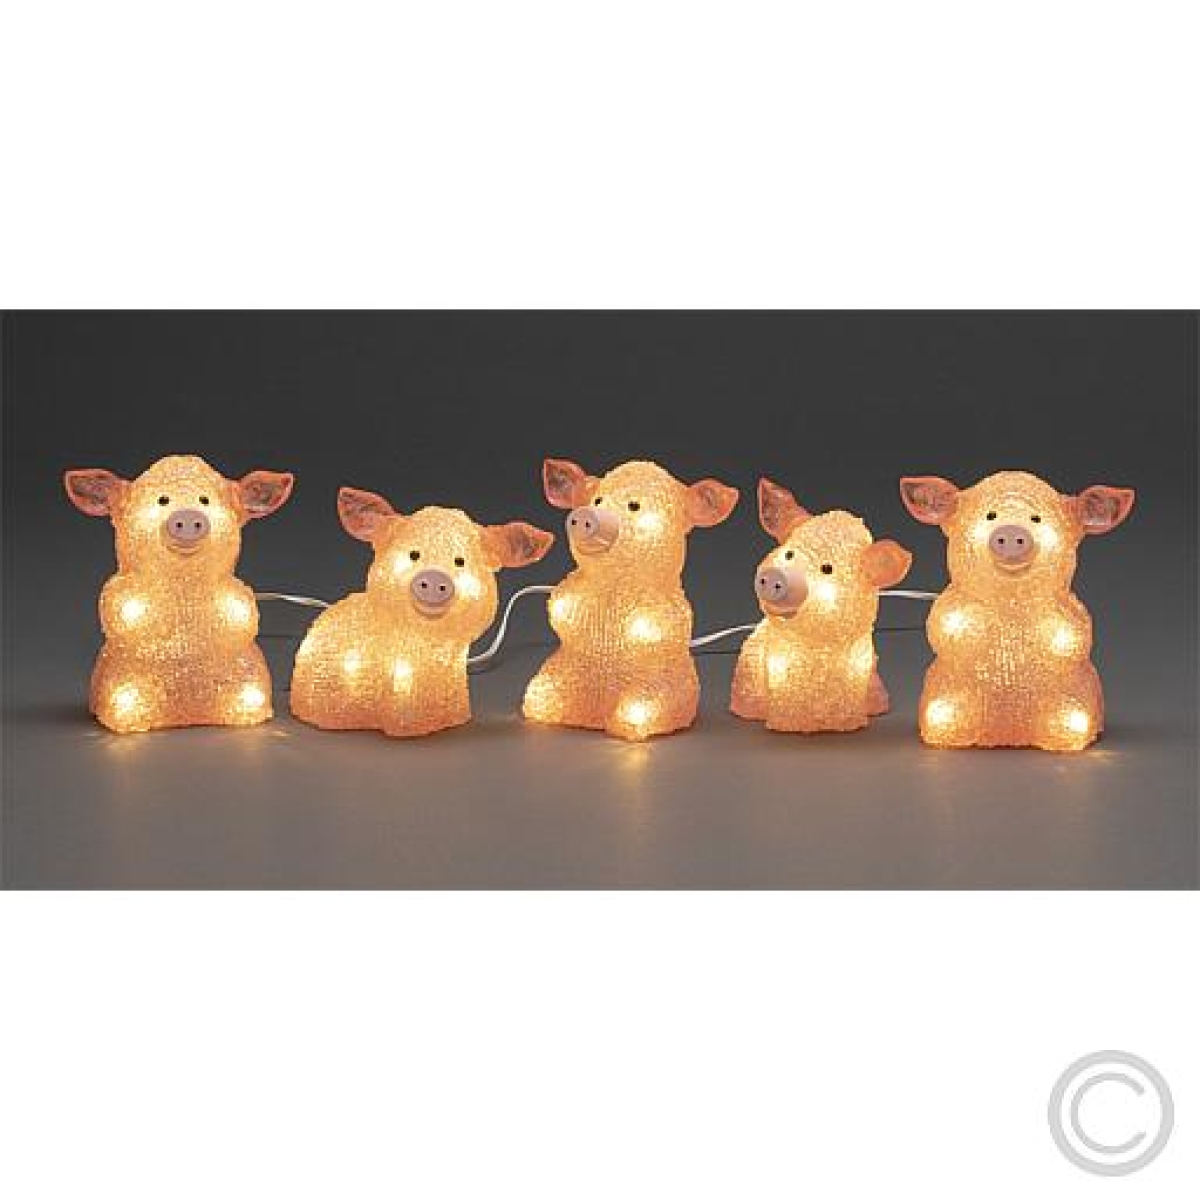 KonstsmideLED-Acryl-Schweine innen und außen 5x8 LEDs warmweiß 10,5x12,5cm 6232-343Artikel-Nr: 831765